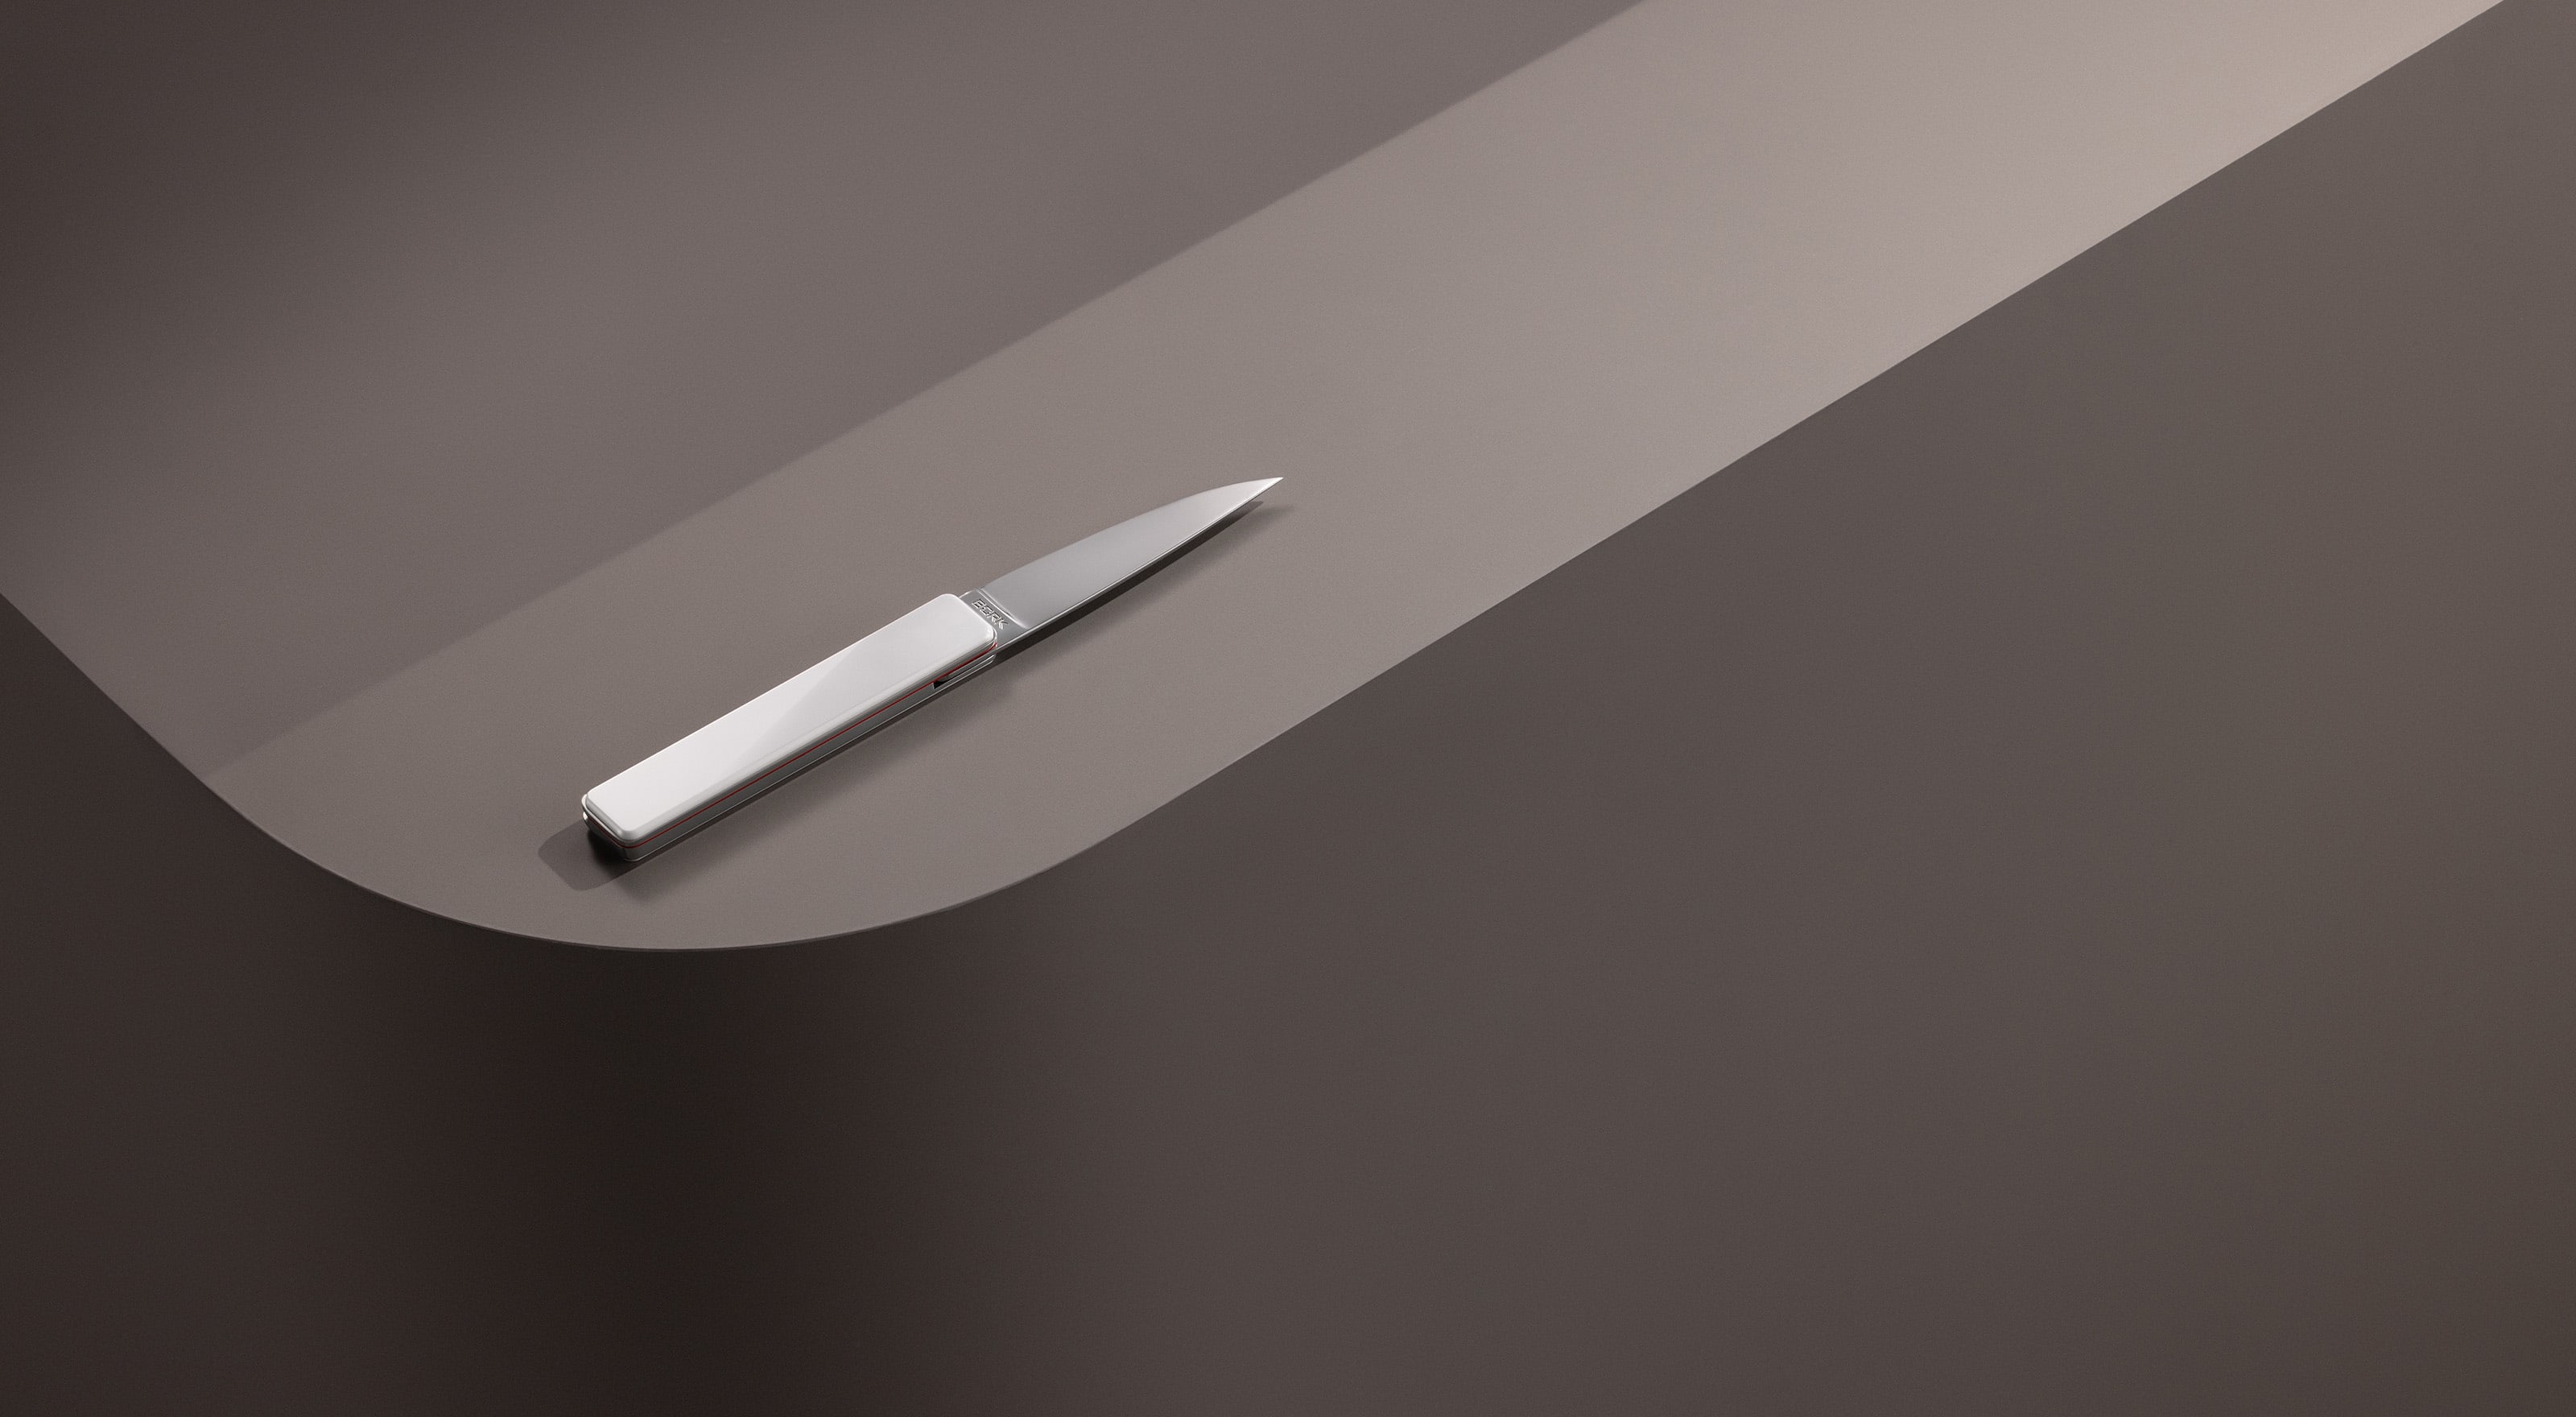 Нож раскладной HN810 wt BORK в Москве - купить в официальном интернет-бутике БОРК